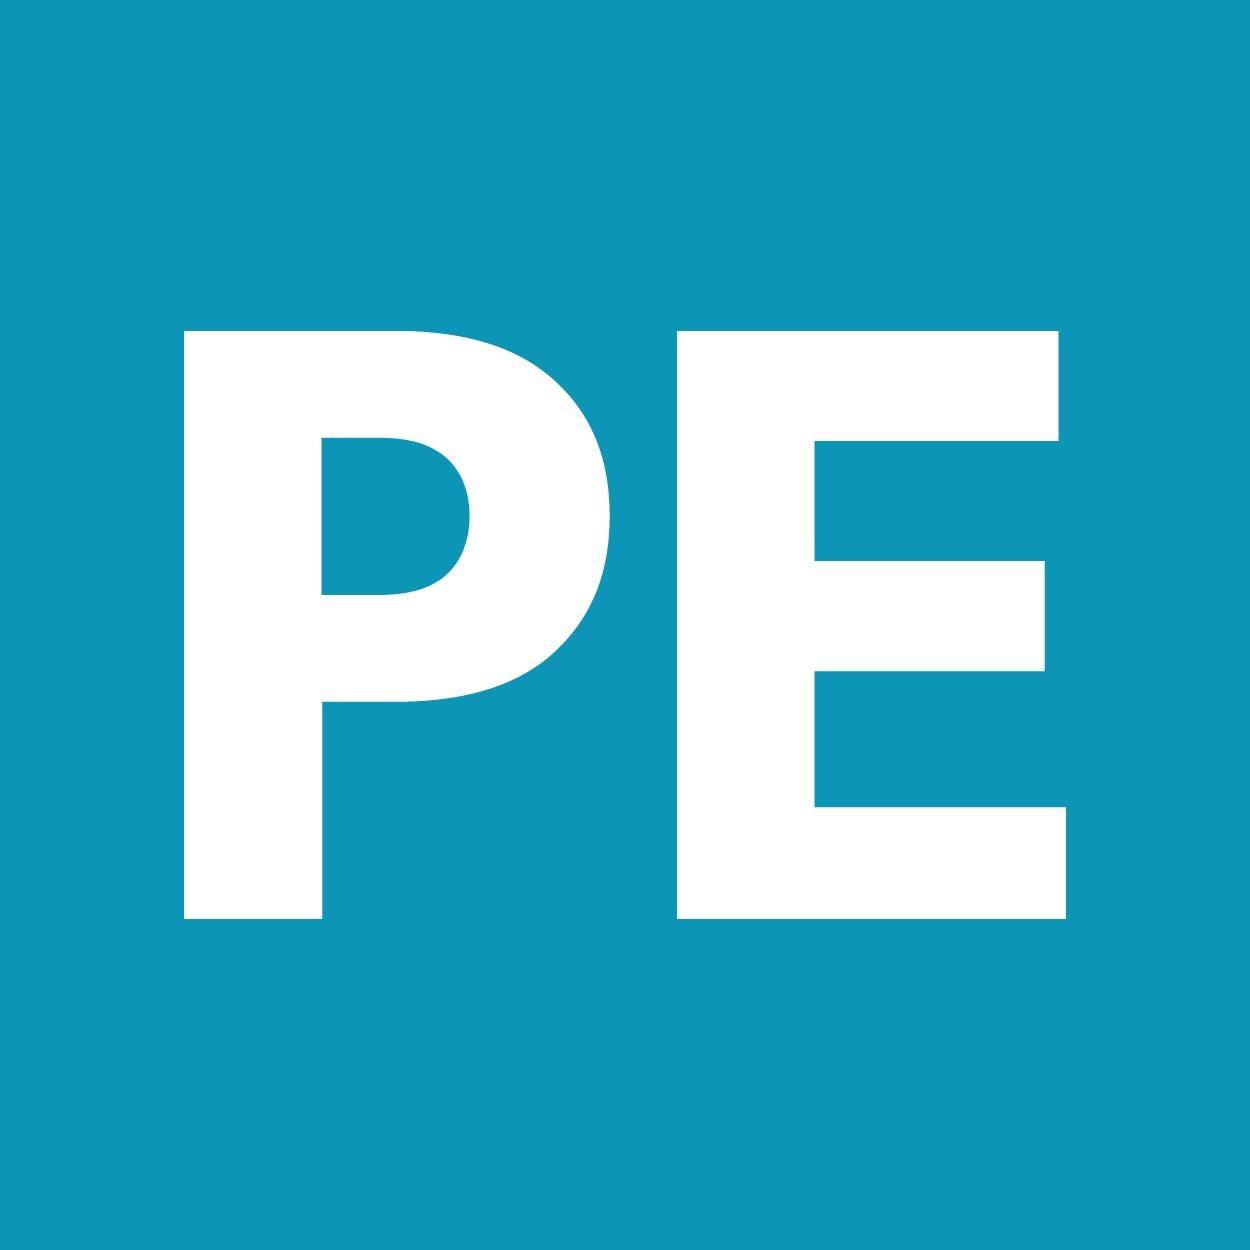 Company logo of Pet Emporium